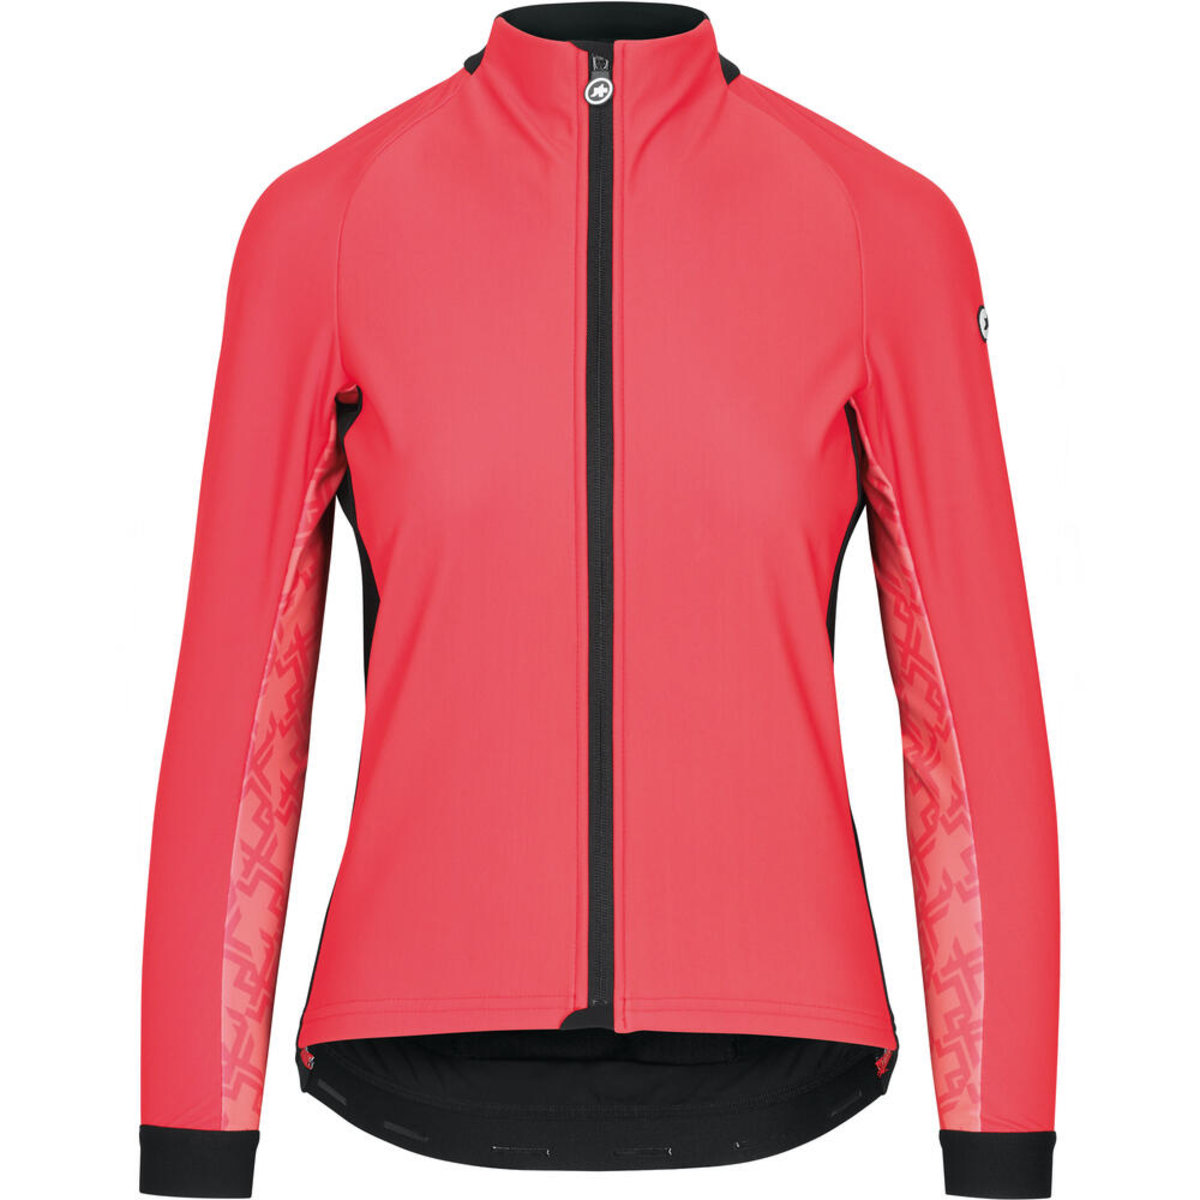 Куртка ASSOS Uma GT Wind Jacket, длин. рукав, женская, розовая, XS фото 